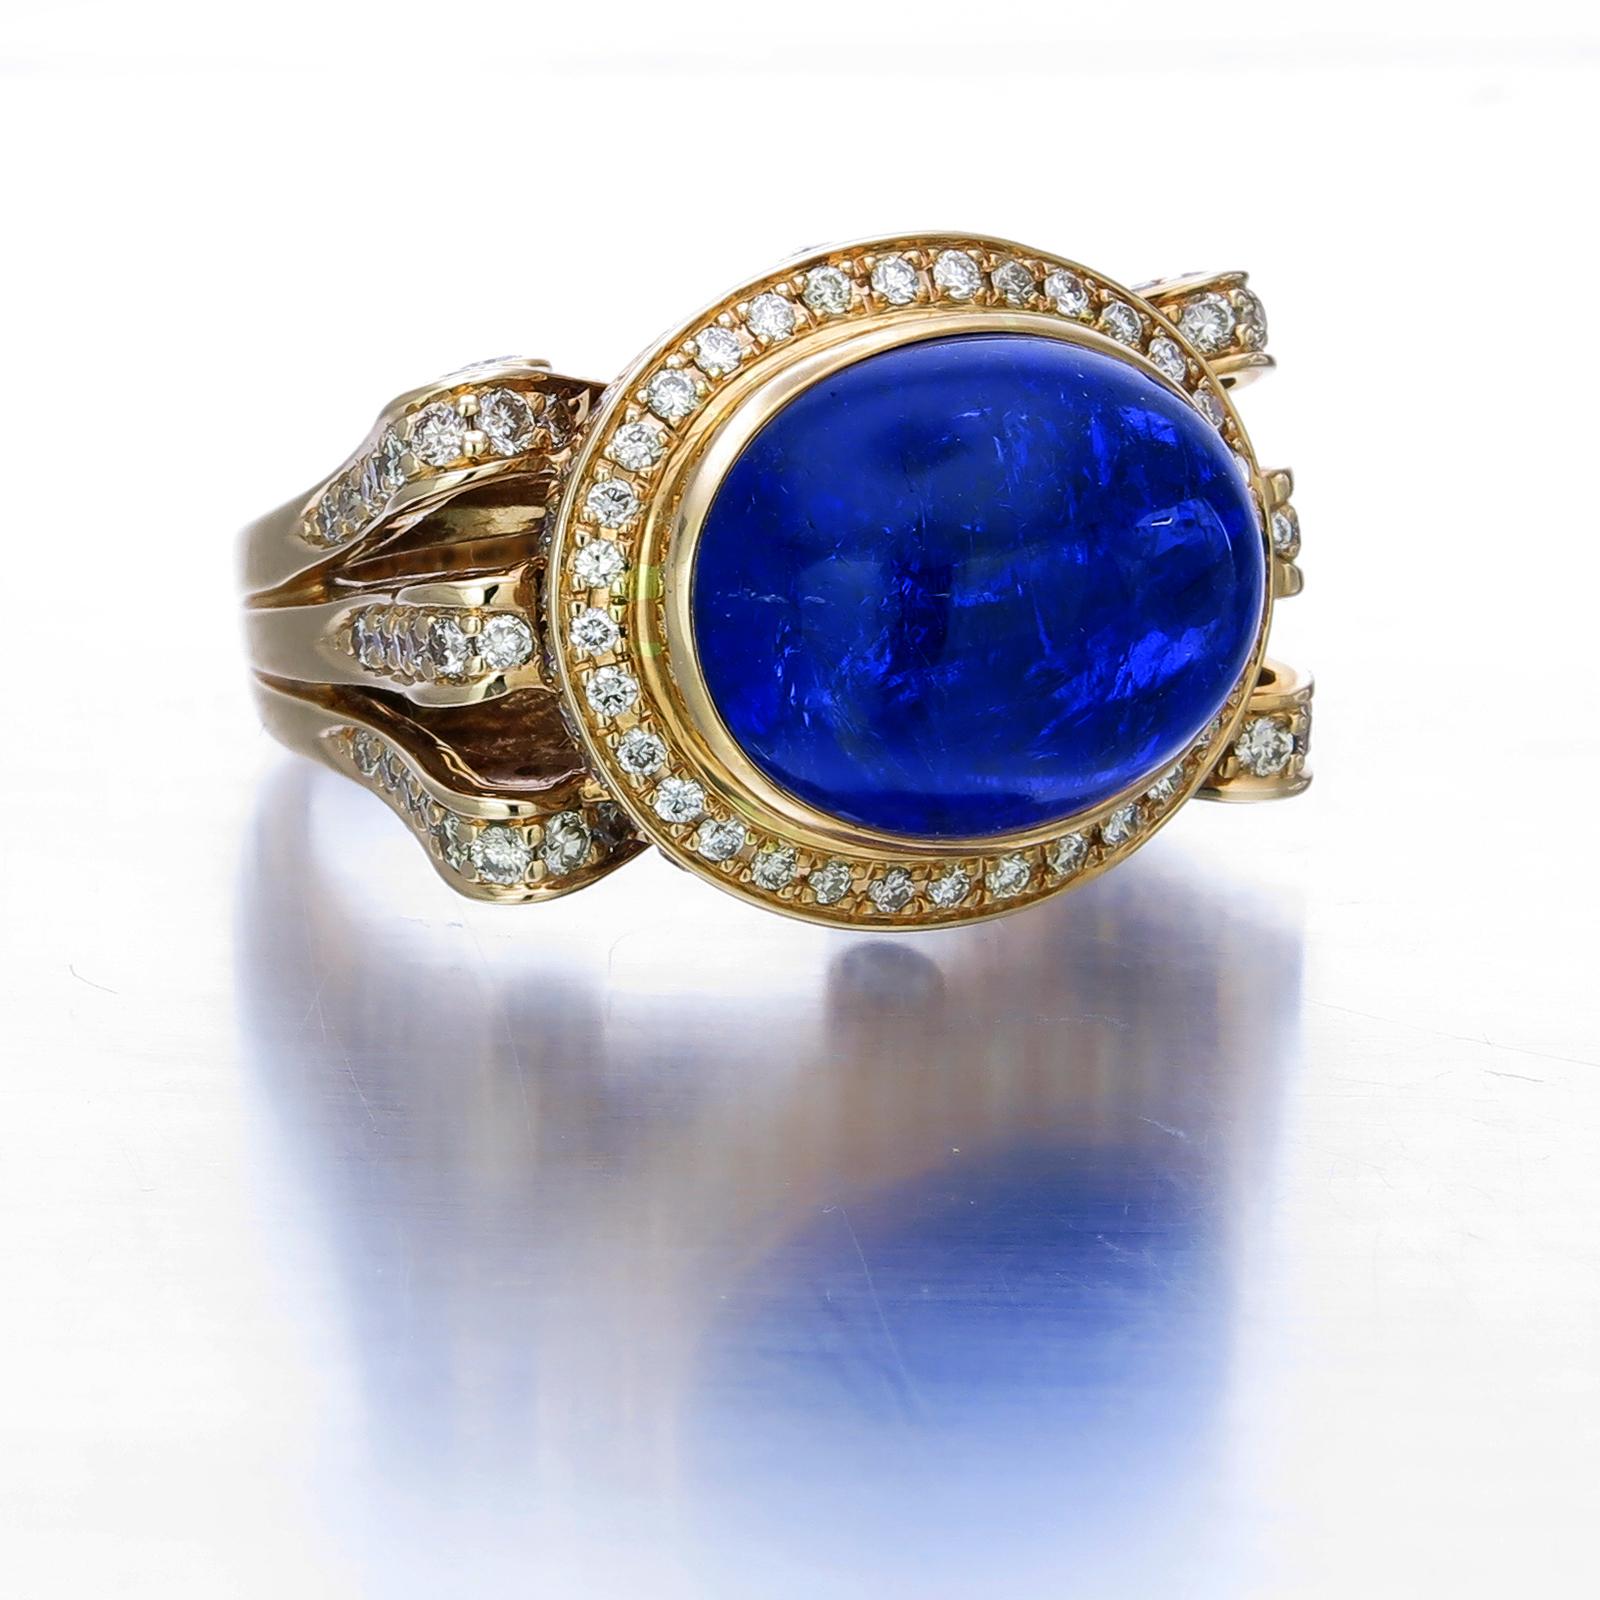 Das tiefe Blau dieses ovalen Tansanits von 14,30 Karat ist faszinierend. Er ruht auf einem gut gearbeiteten Ring aus 18 Karat Gold, umgeben von funkelnden weißen Diamanten von 1,68 Karat. Ein verstellbares Goldband im Ring sorgt für einen sicheren